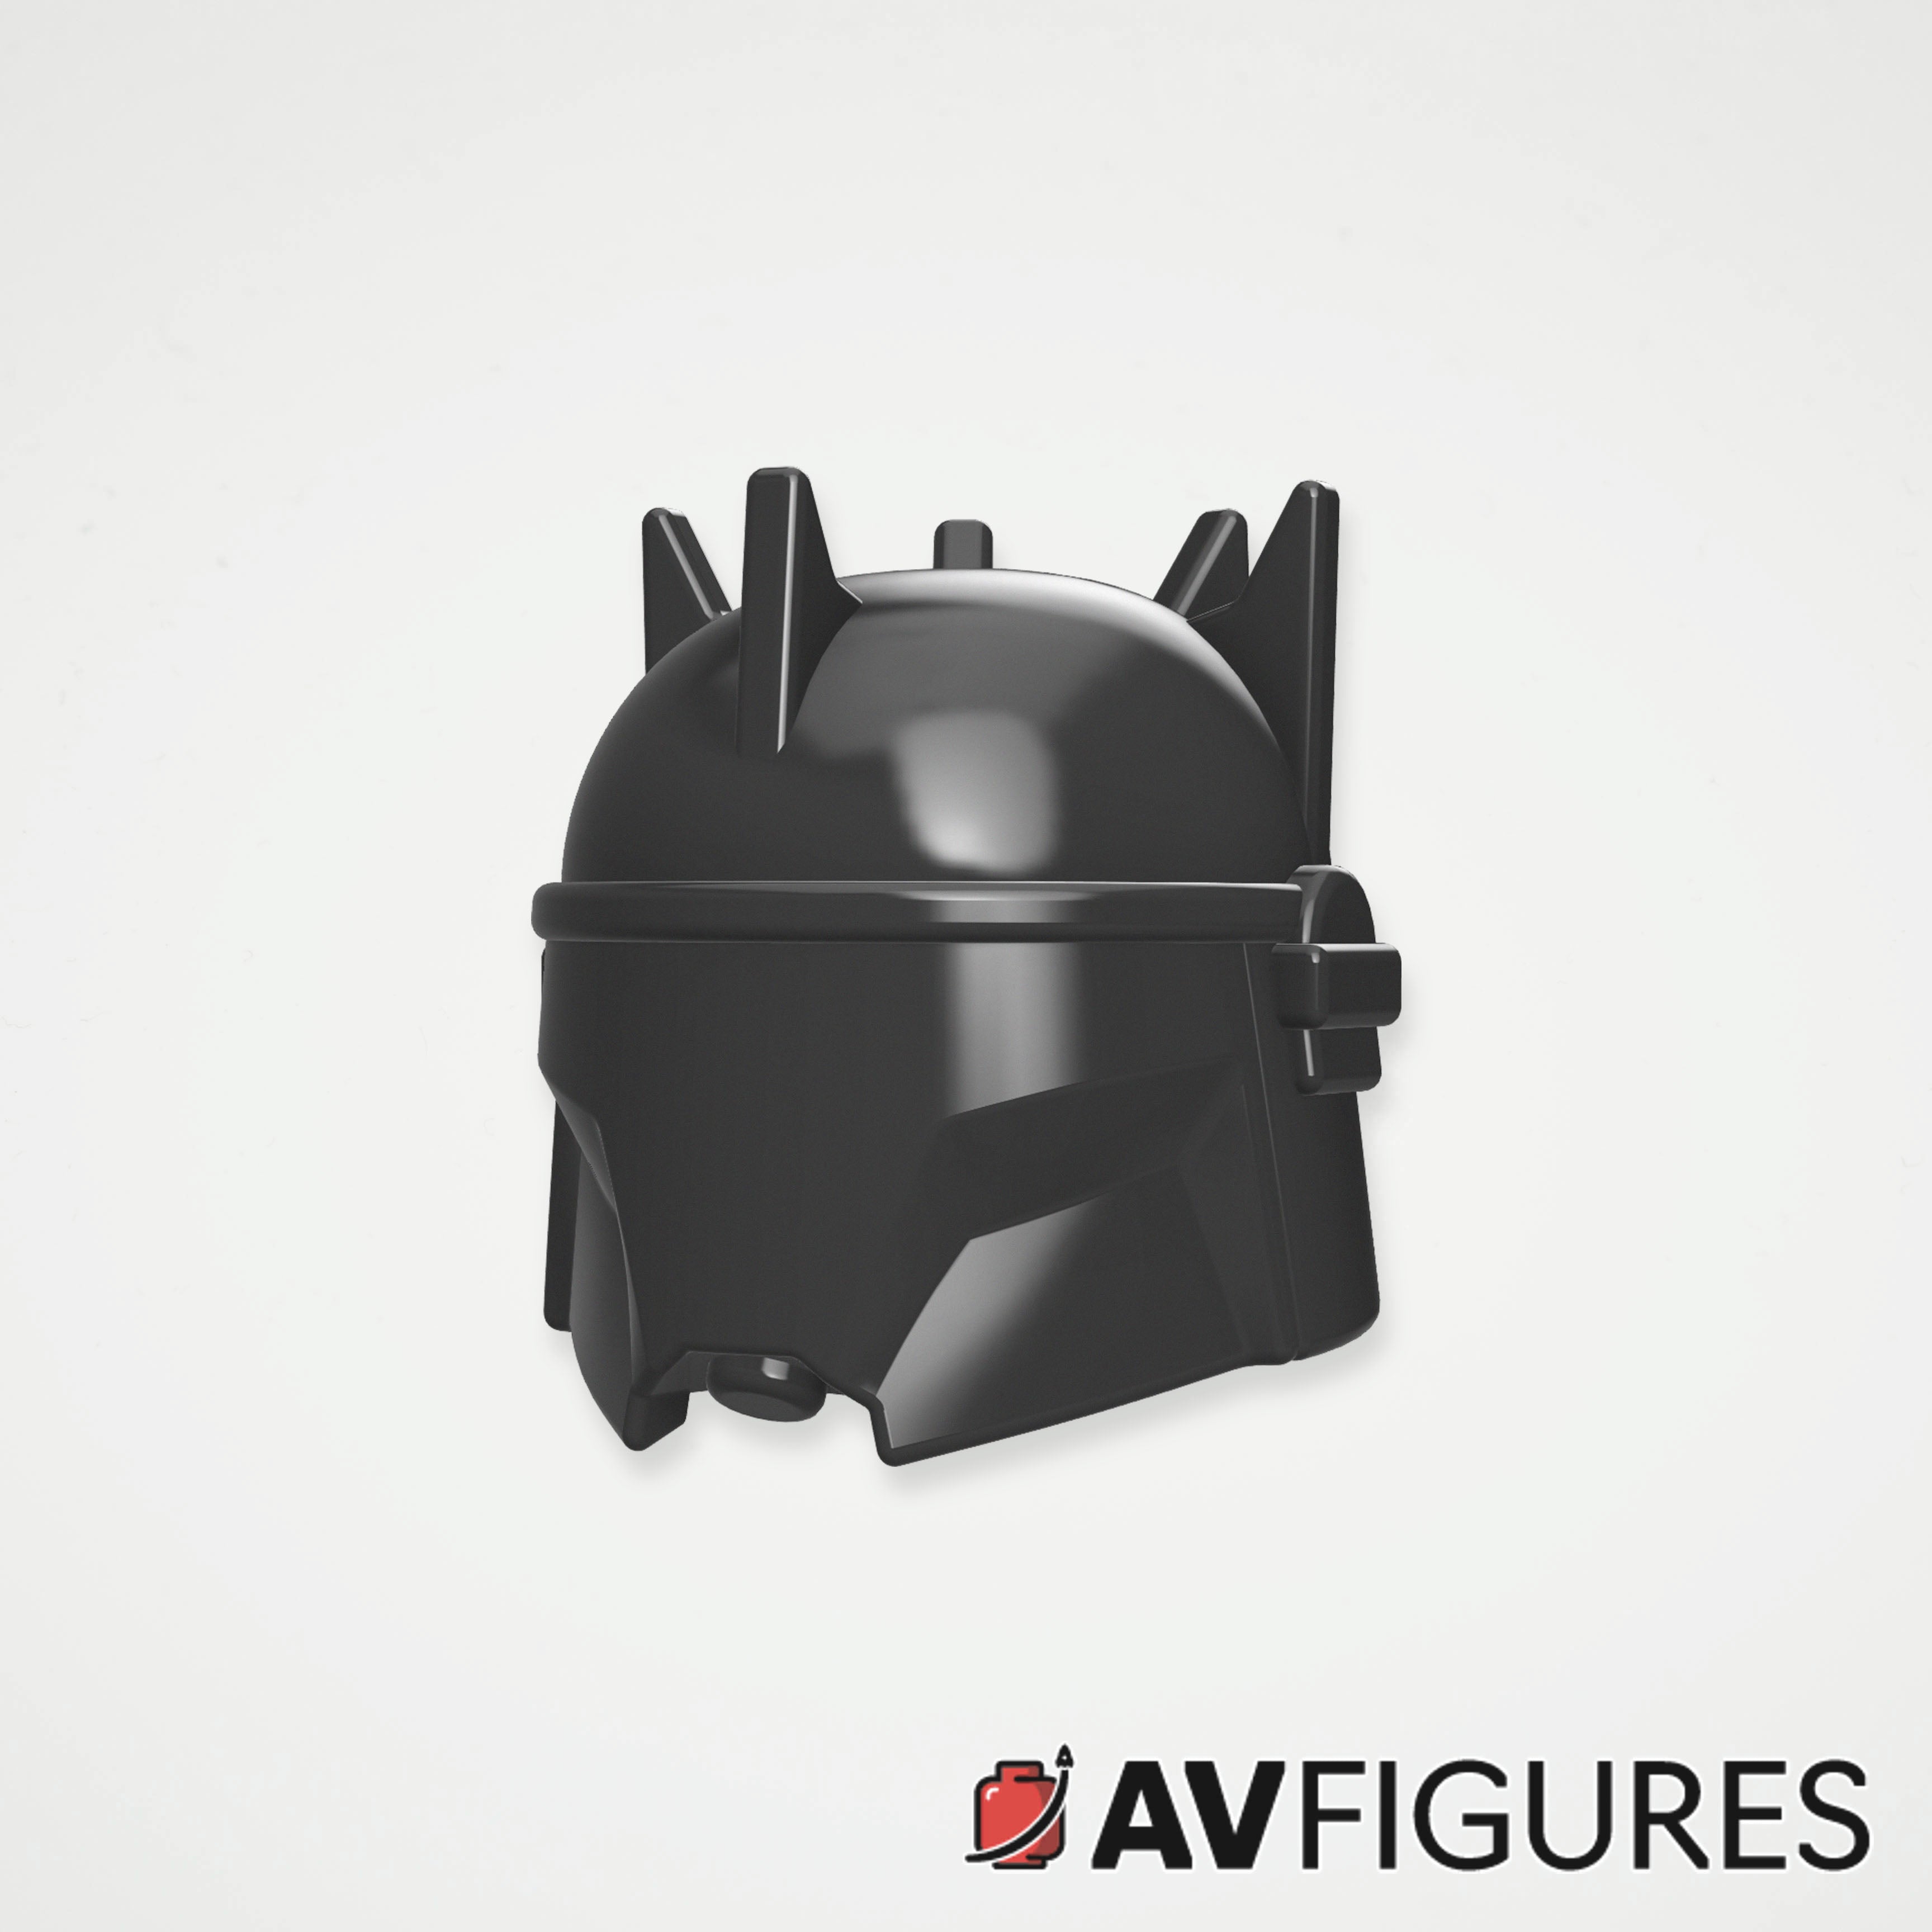 Moff Gideon - Dark Trooper Helmet 3D Print